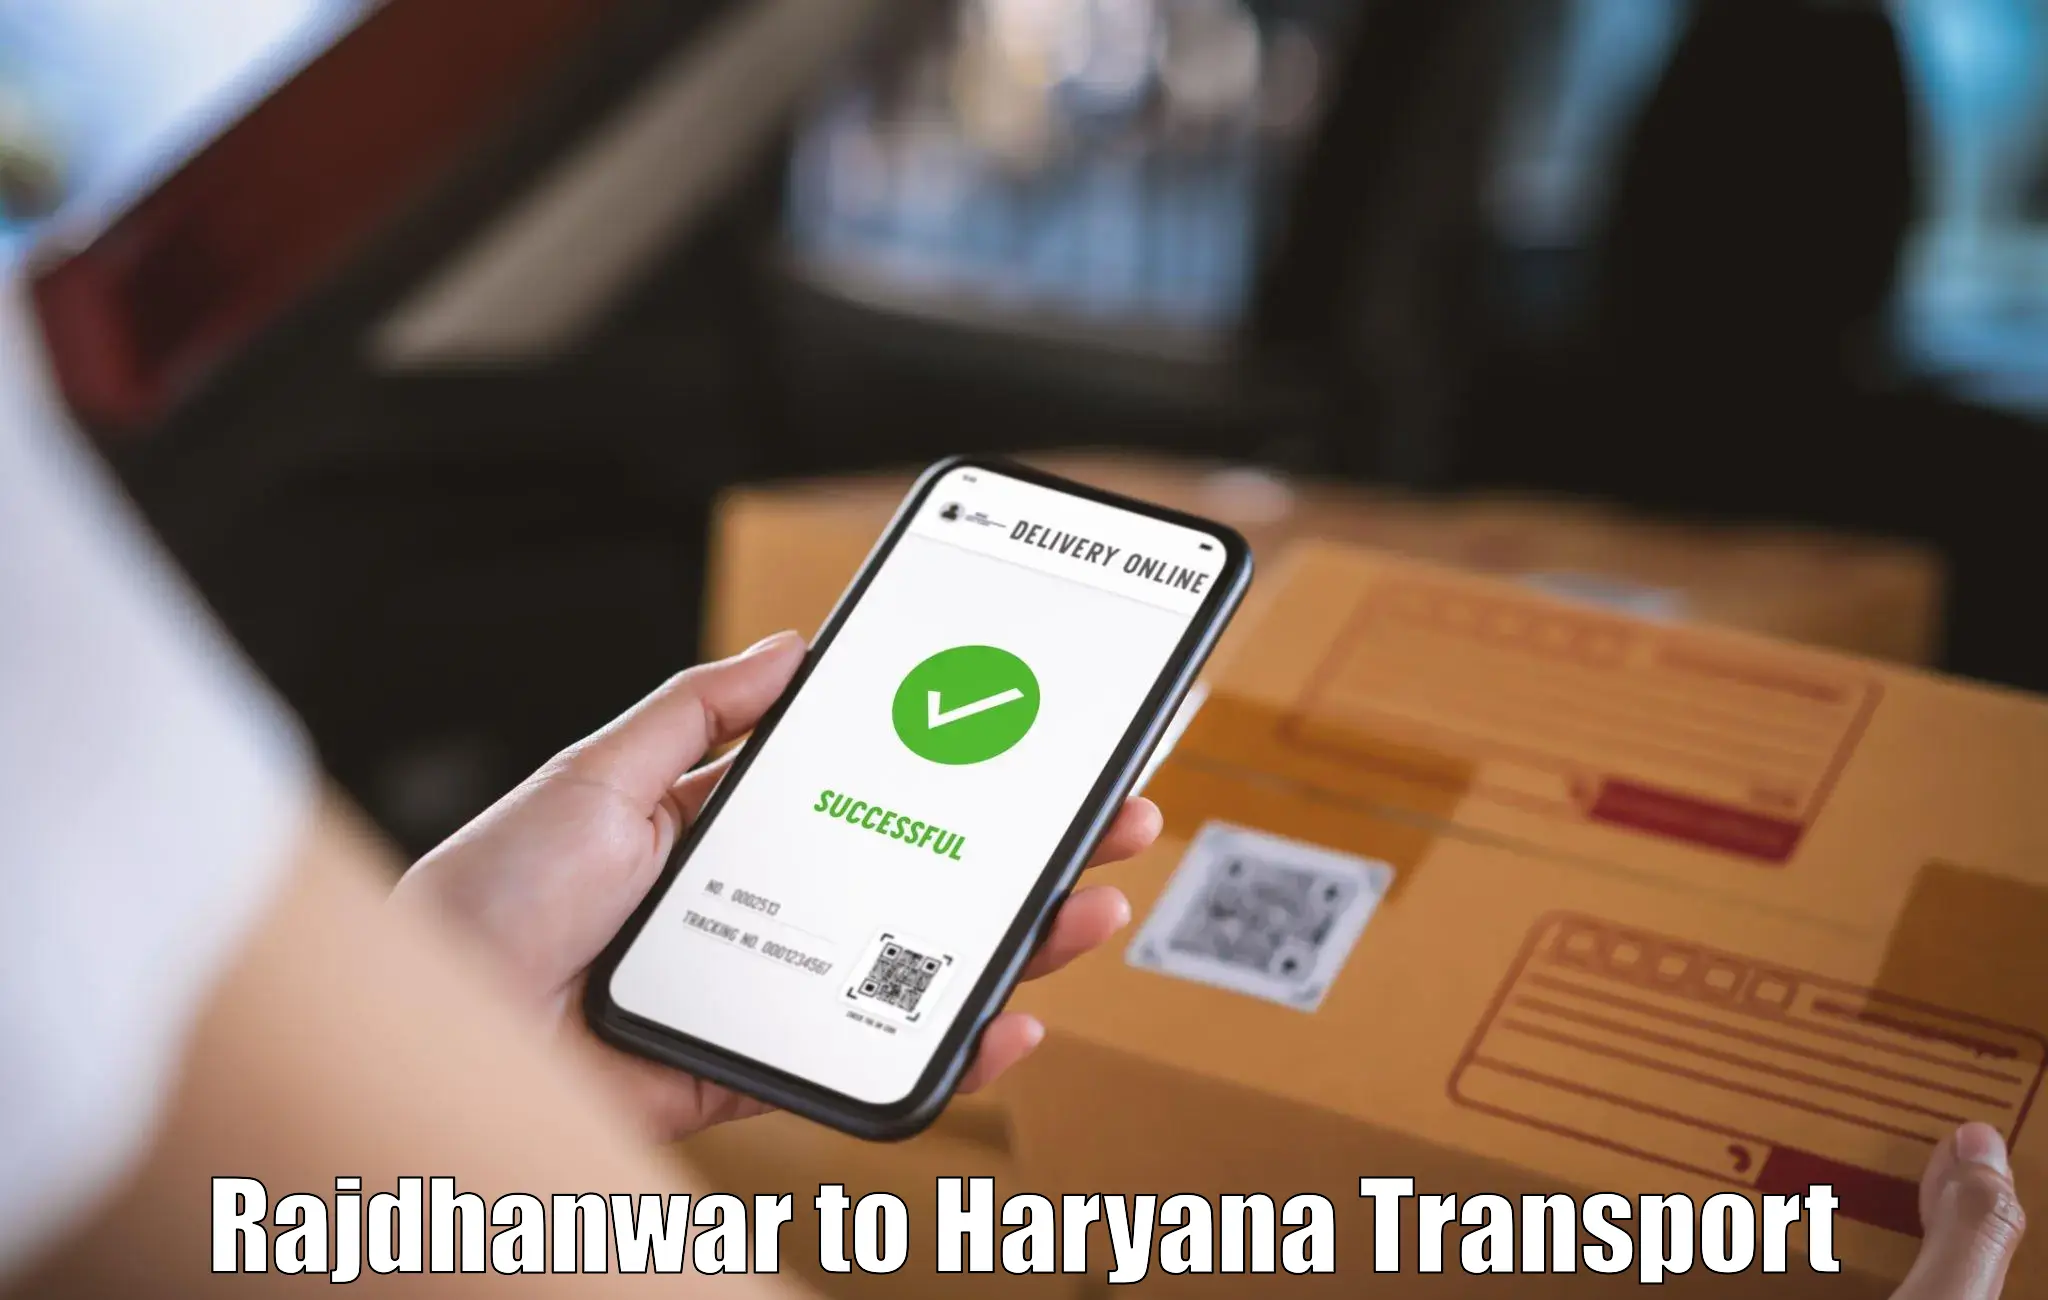 Lorry transport service Rajdhanwar to Hansi